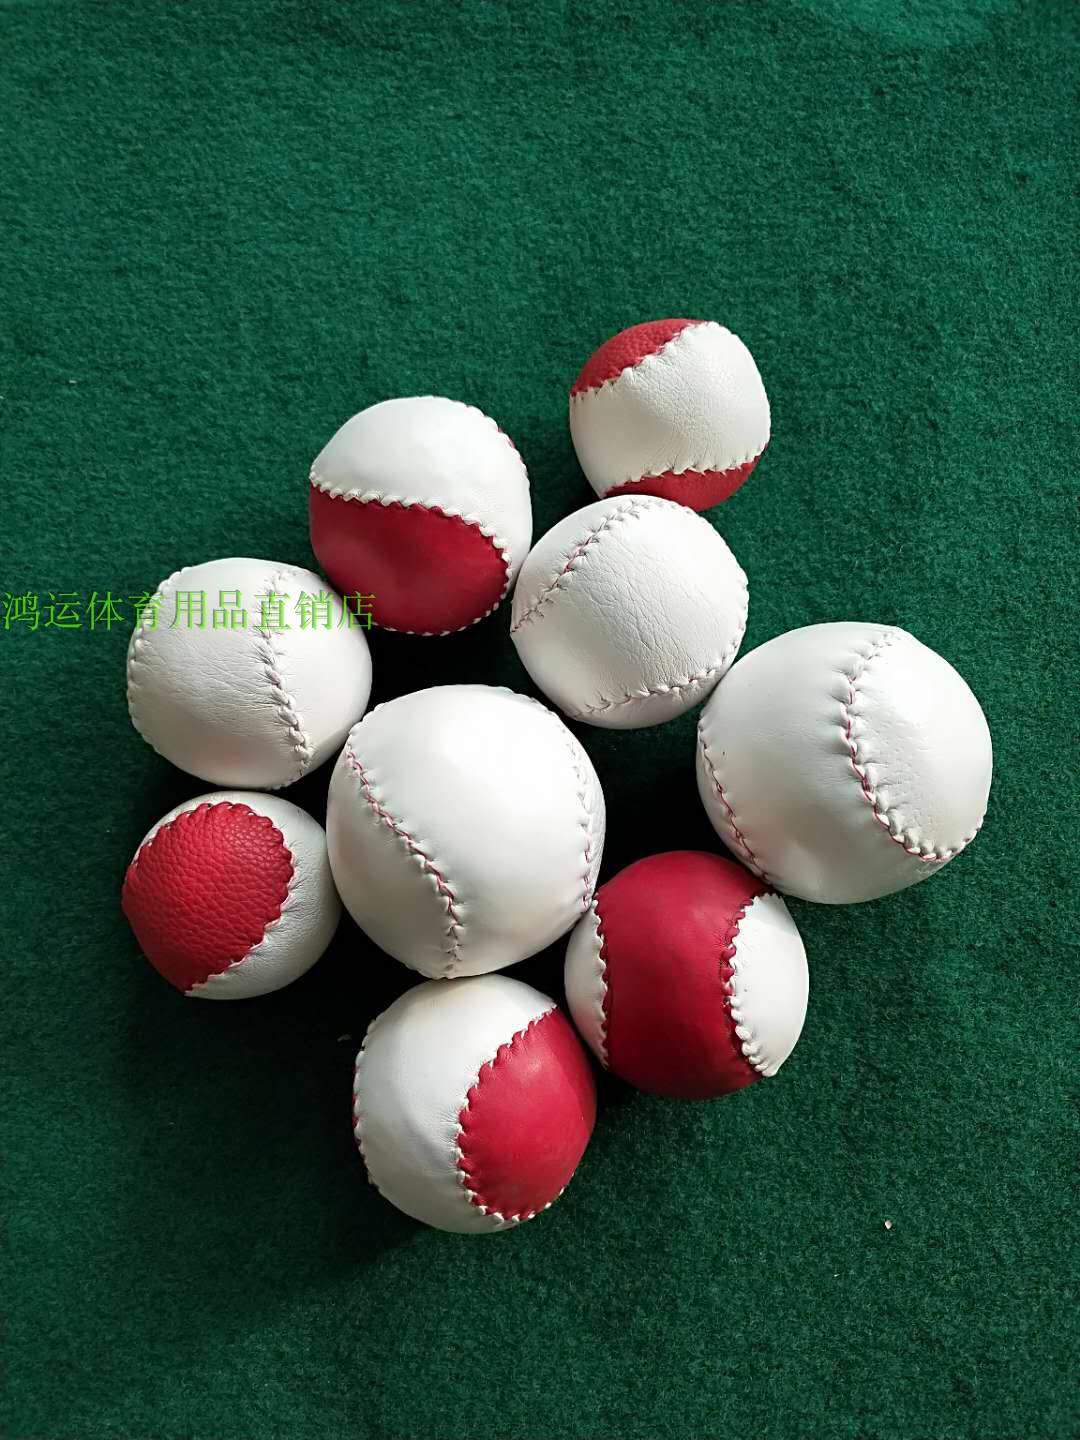 厂家直销纯手工缝制10寸/12寸垒球中小学生训练比赛专用垒球棒球 - 图1